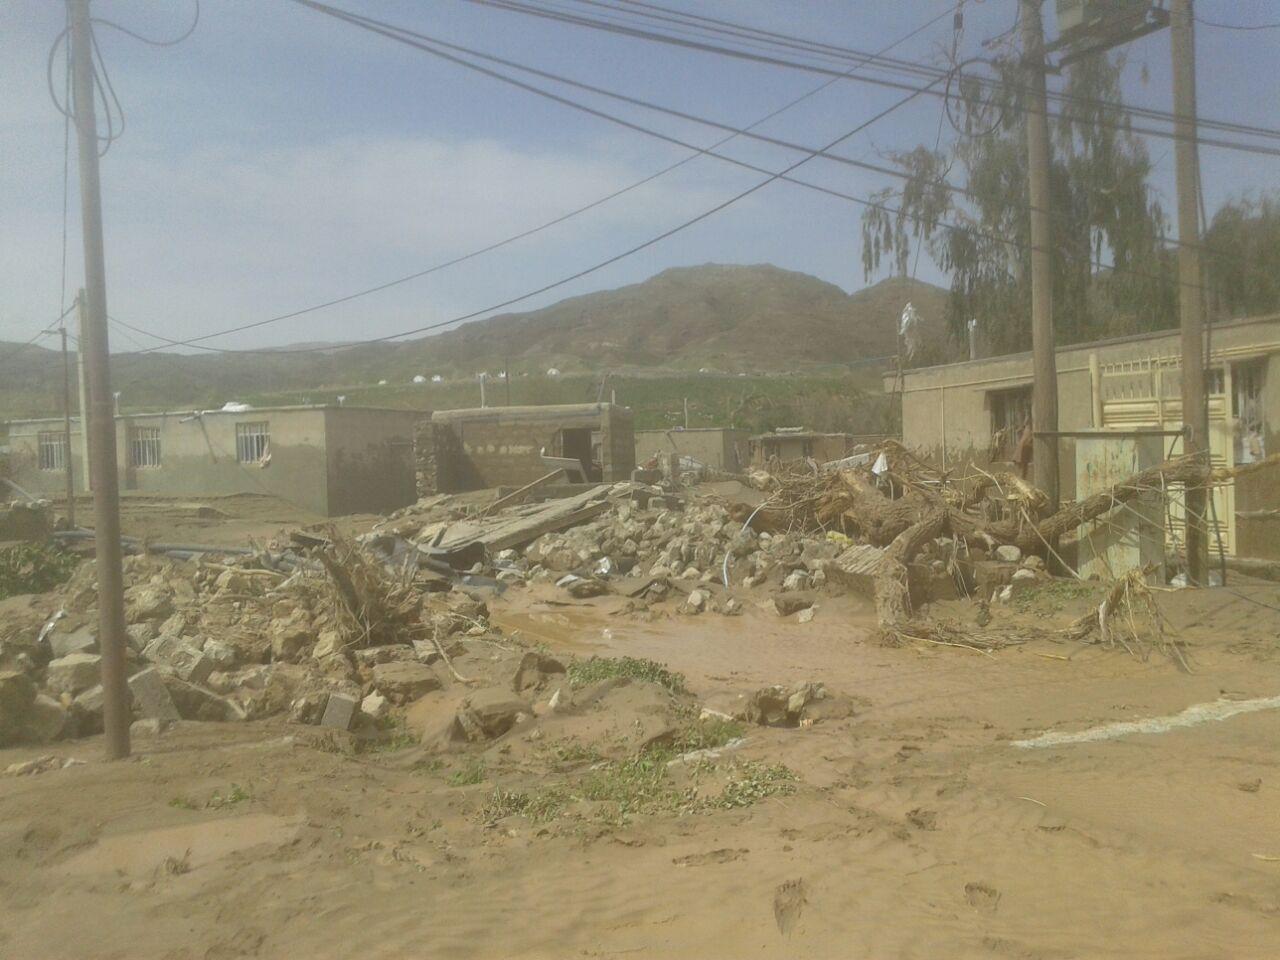 الواقتصادآنلاین/شرایط سخت مردم روستای "چم مهر" پس از سیل!